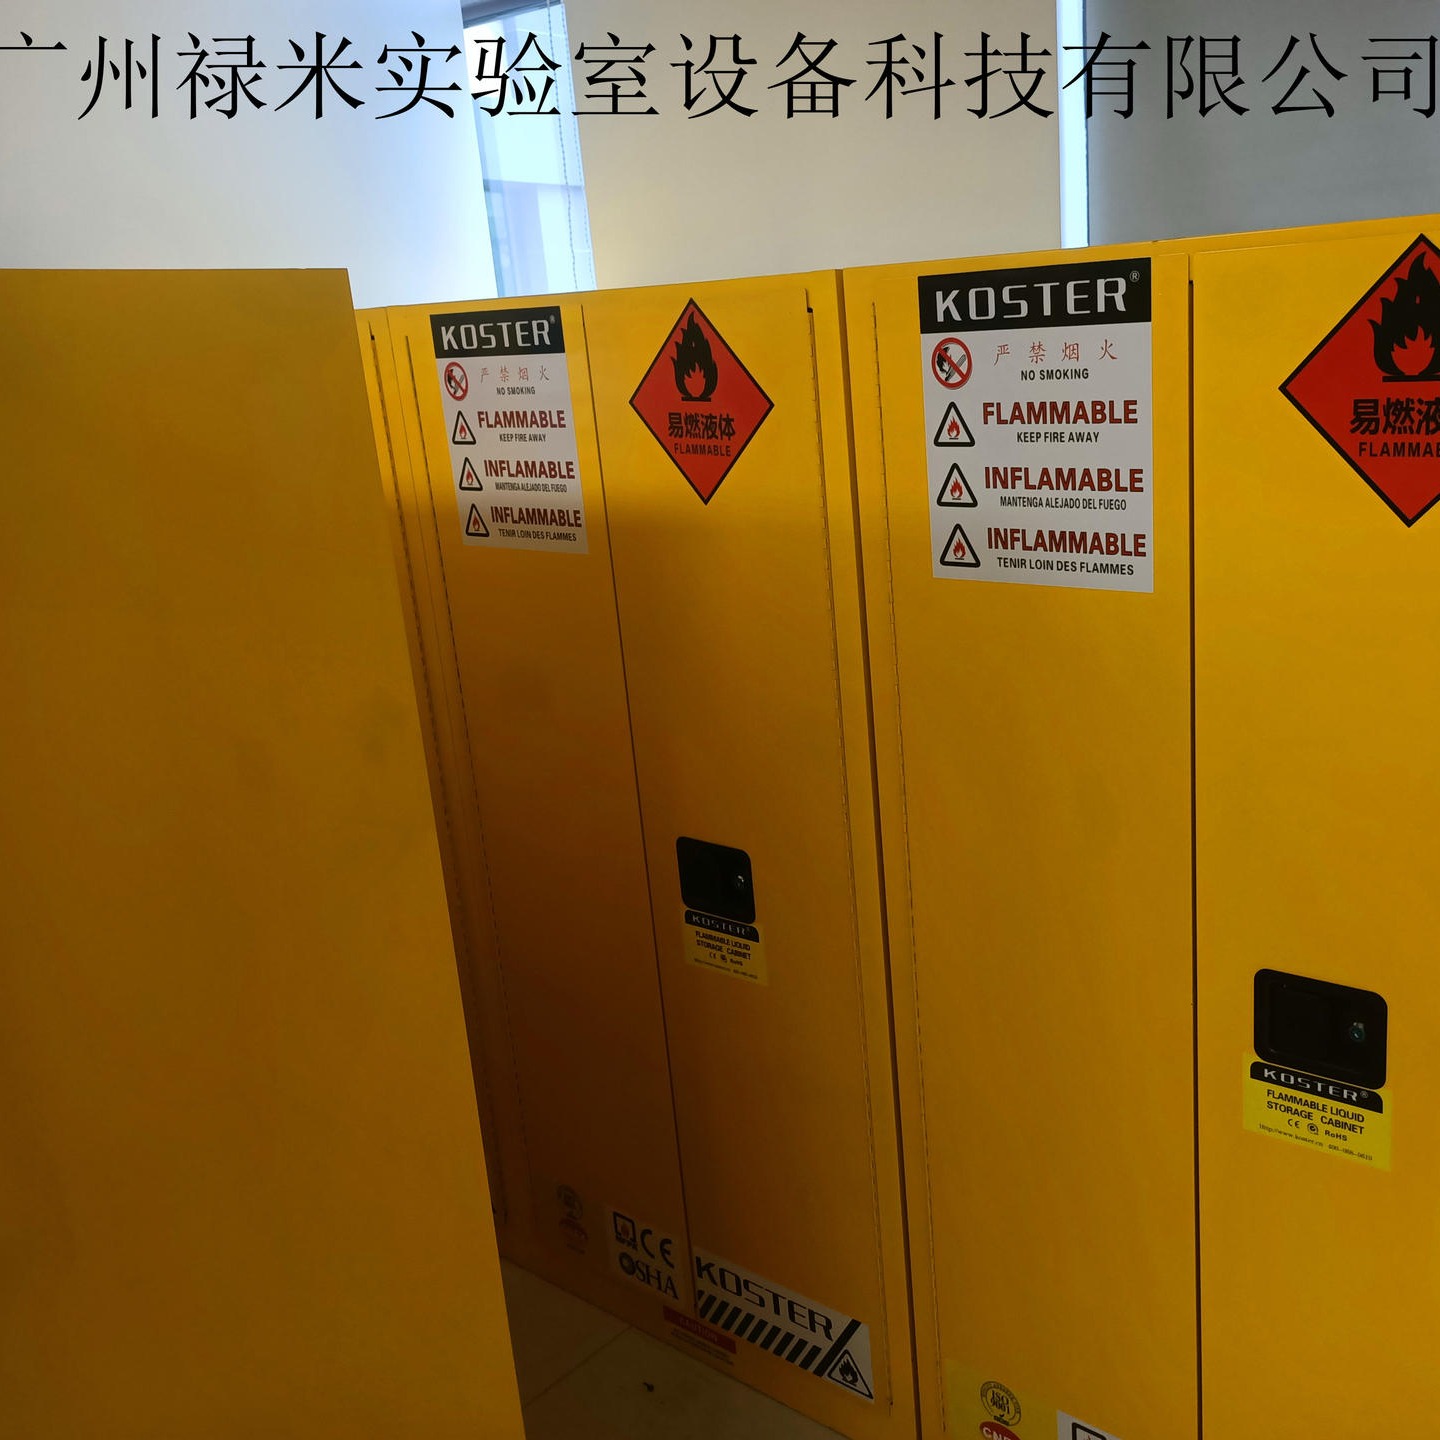 禄米实验室   厂家专业定制生产全钢安全柜  带报警全钢安全柜  支持非标尺寸定制LUMI-AQG7172S